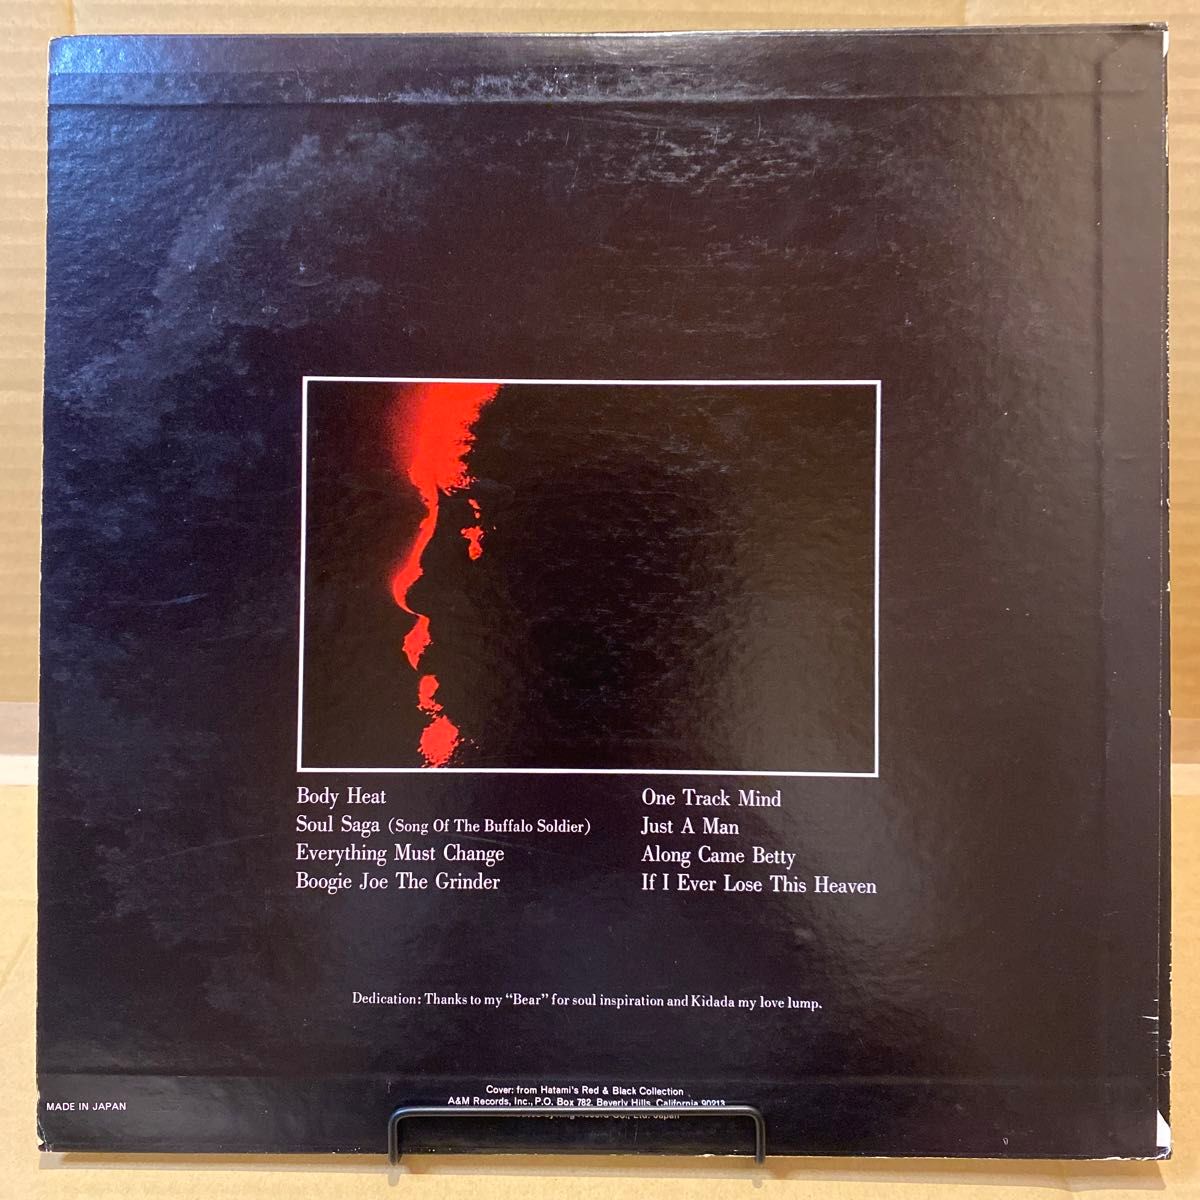 Quincy Jones / Body Heat LP レコード 日本盤